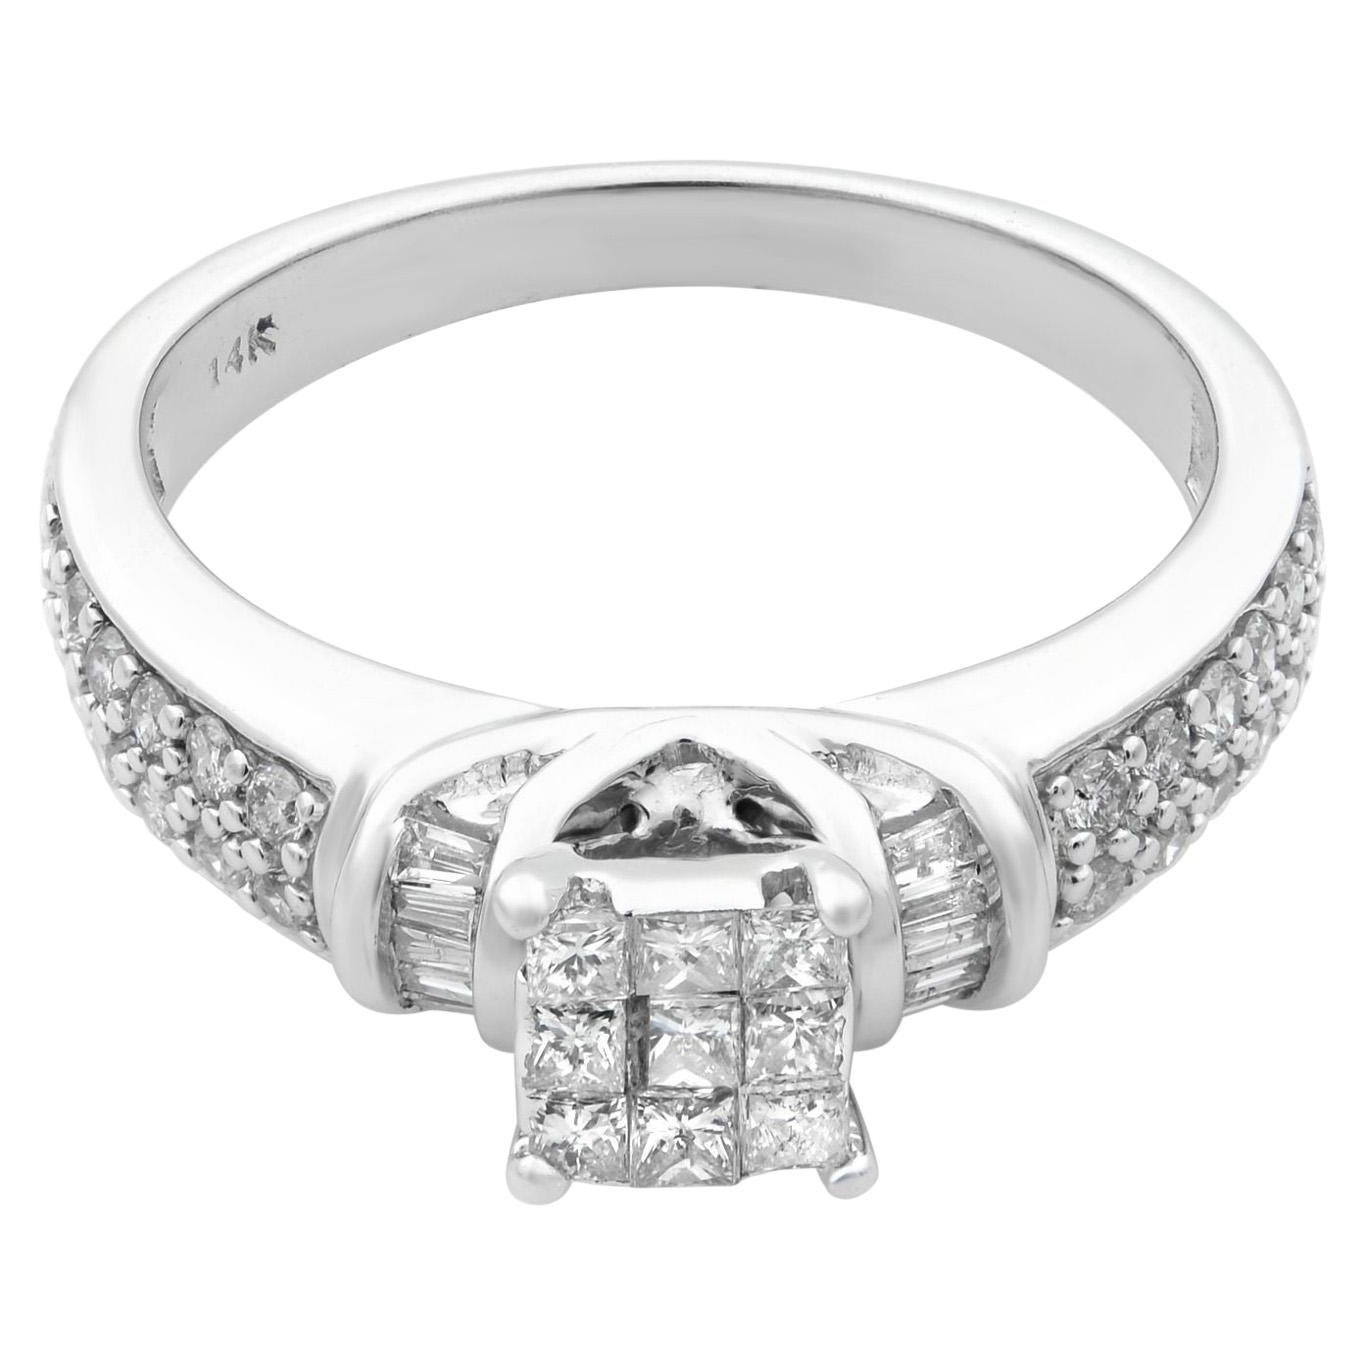 Rachel Koen Diamond Engagement Ring 14K White Gold 0.55cttw